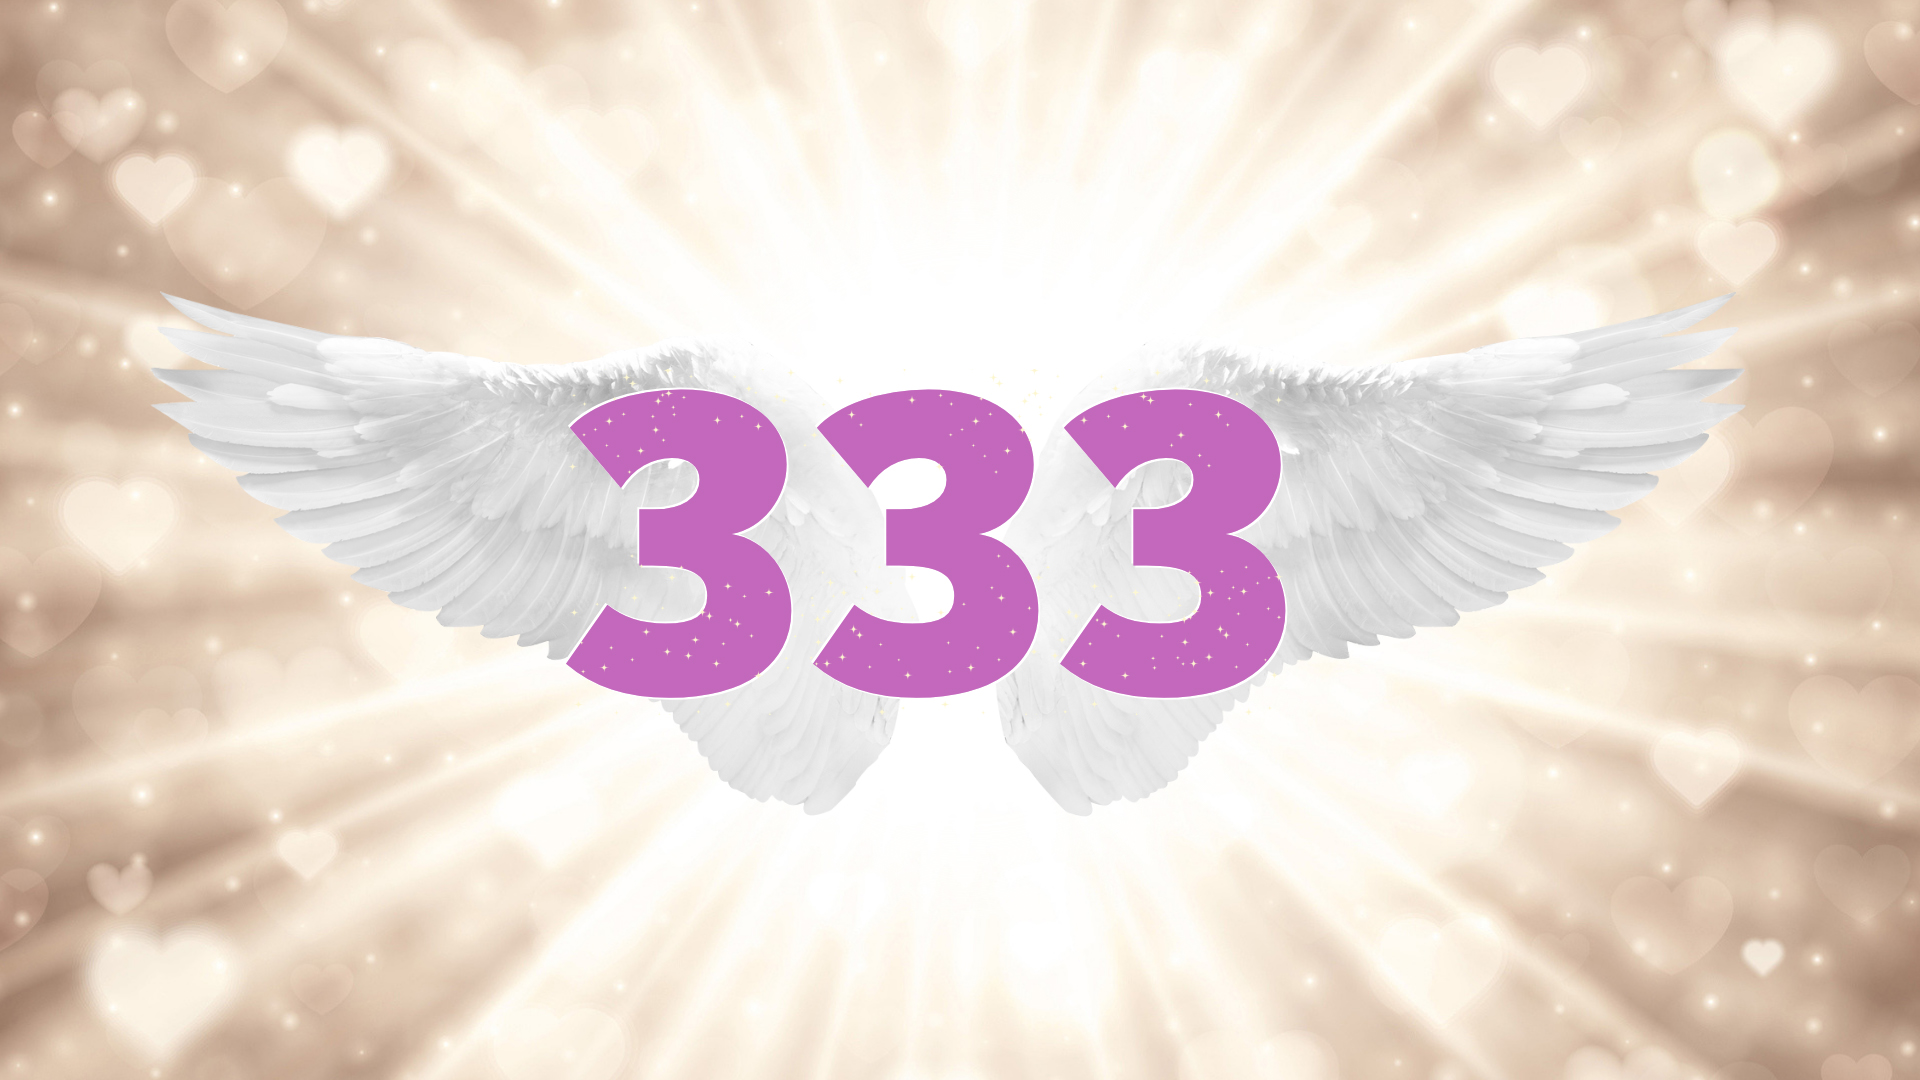 340 angel number